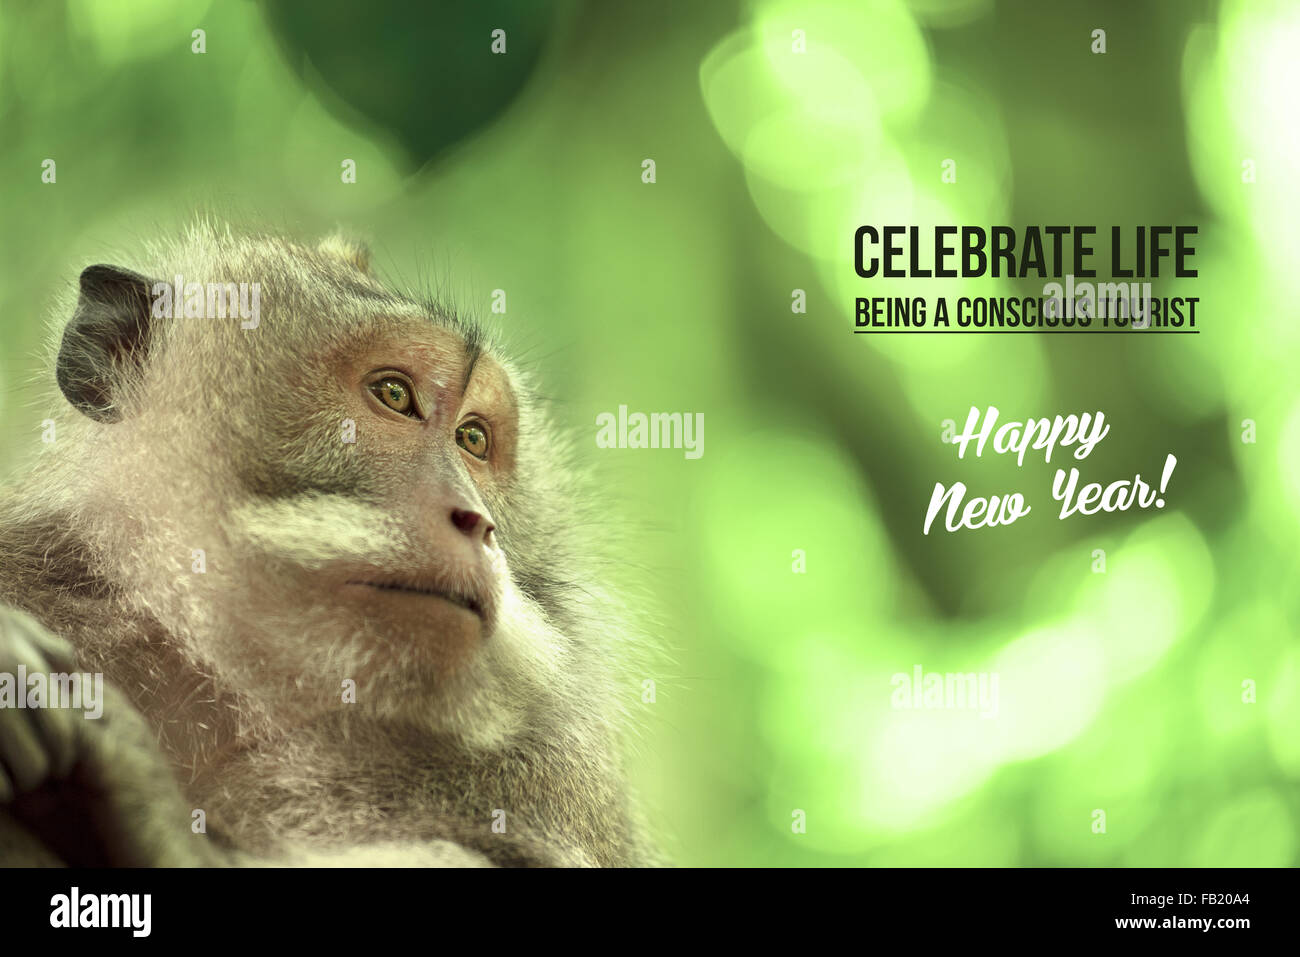 Portrait de singe sauvage dans l'habitat naturel, bonne année avec la conservation de la faune tourisme texte. Idéal pour la campagne électorale Banque D'Images